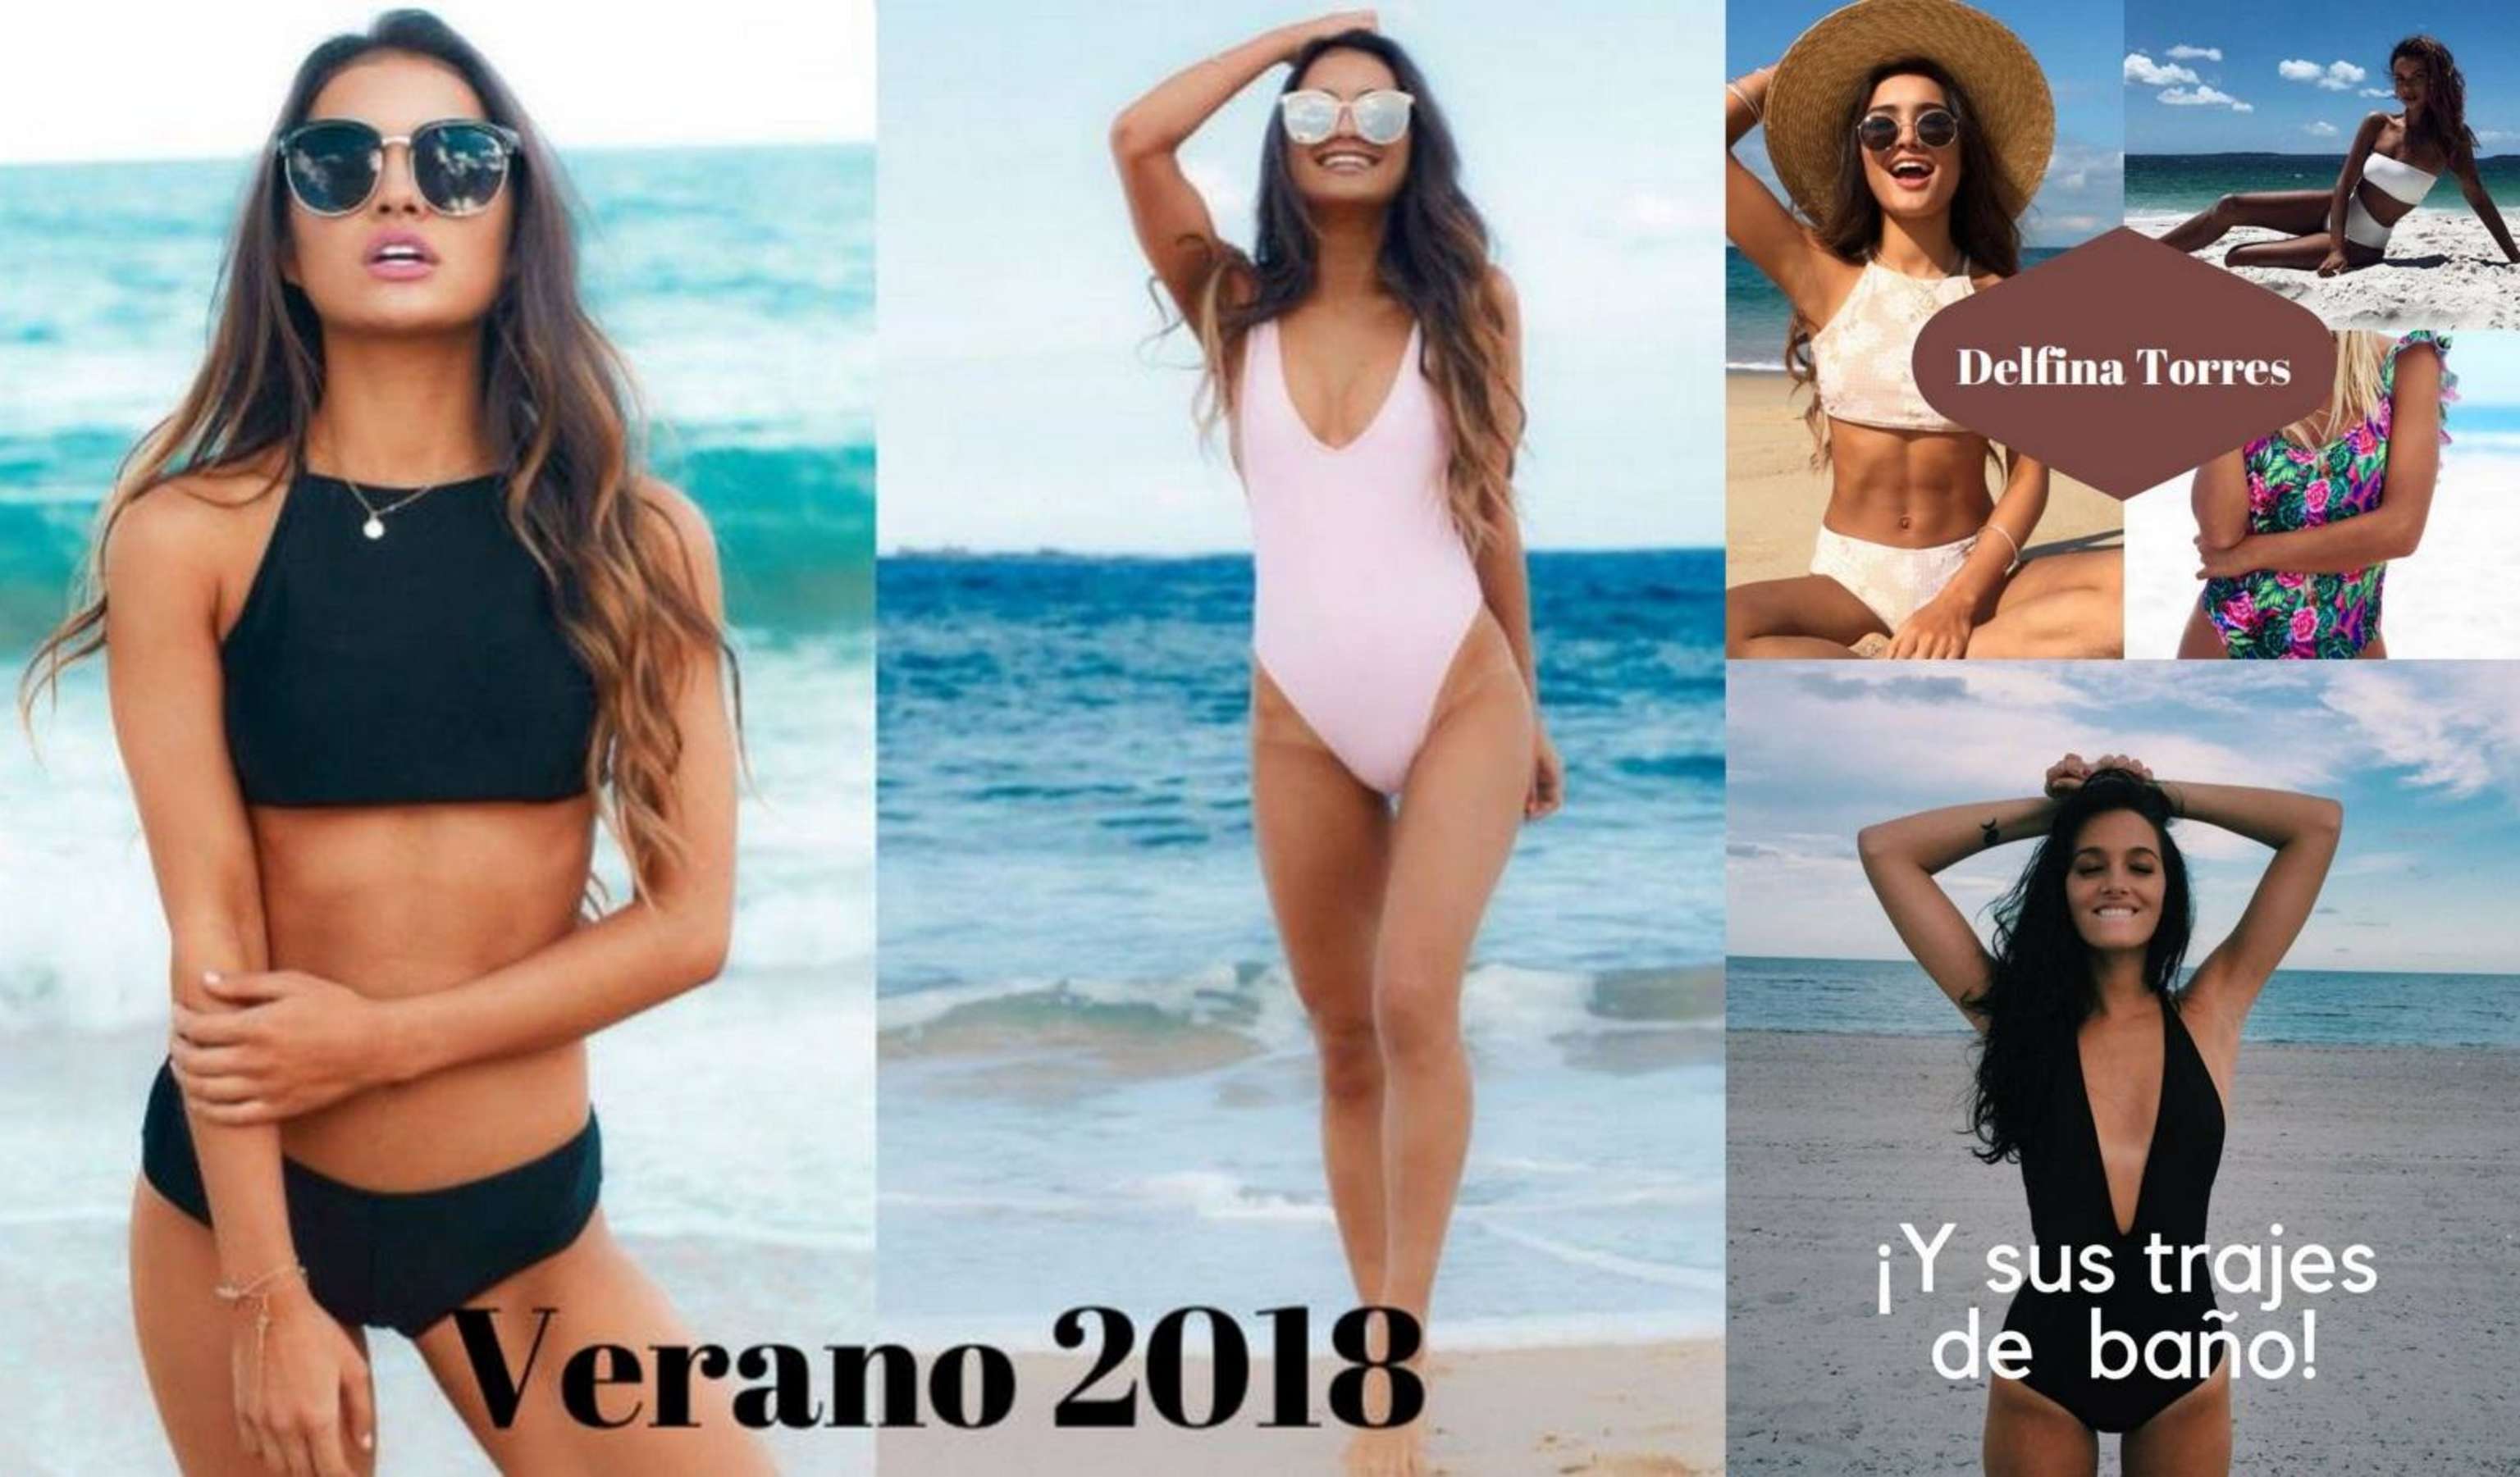 Ortodoxo Disco Verter Verano 2018 y sus trajes de baño! - by Flo Pereira